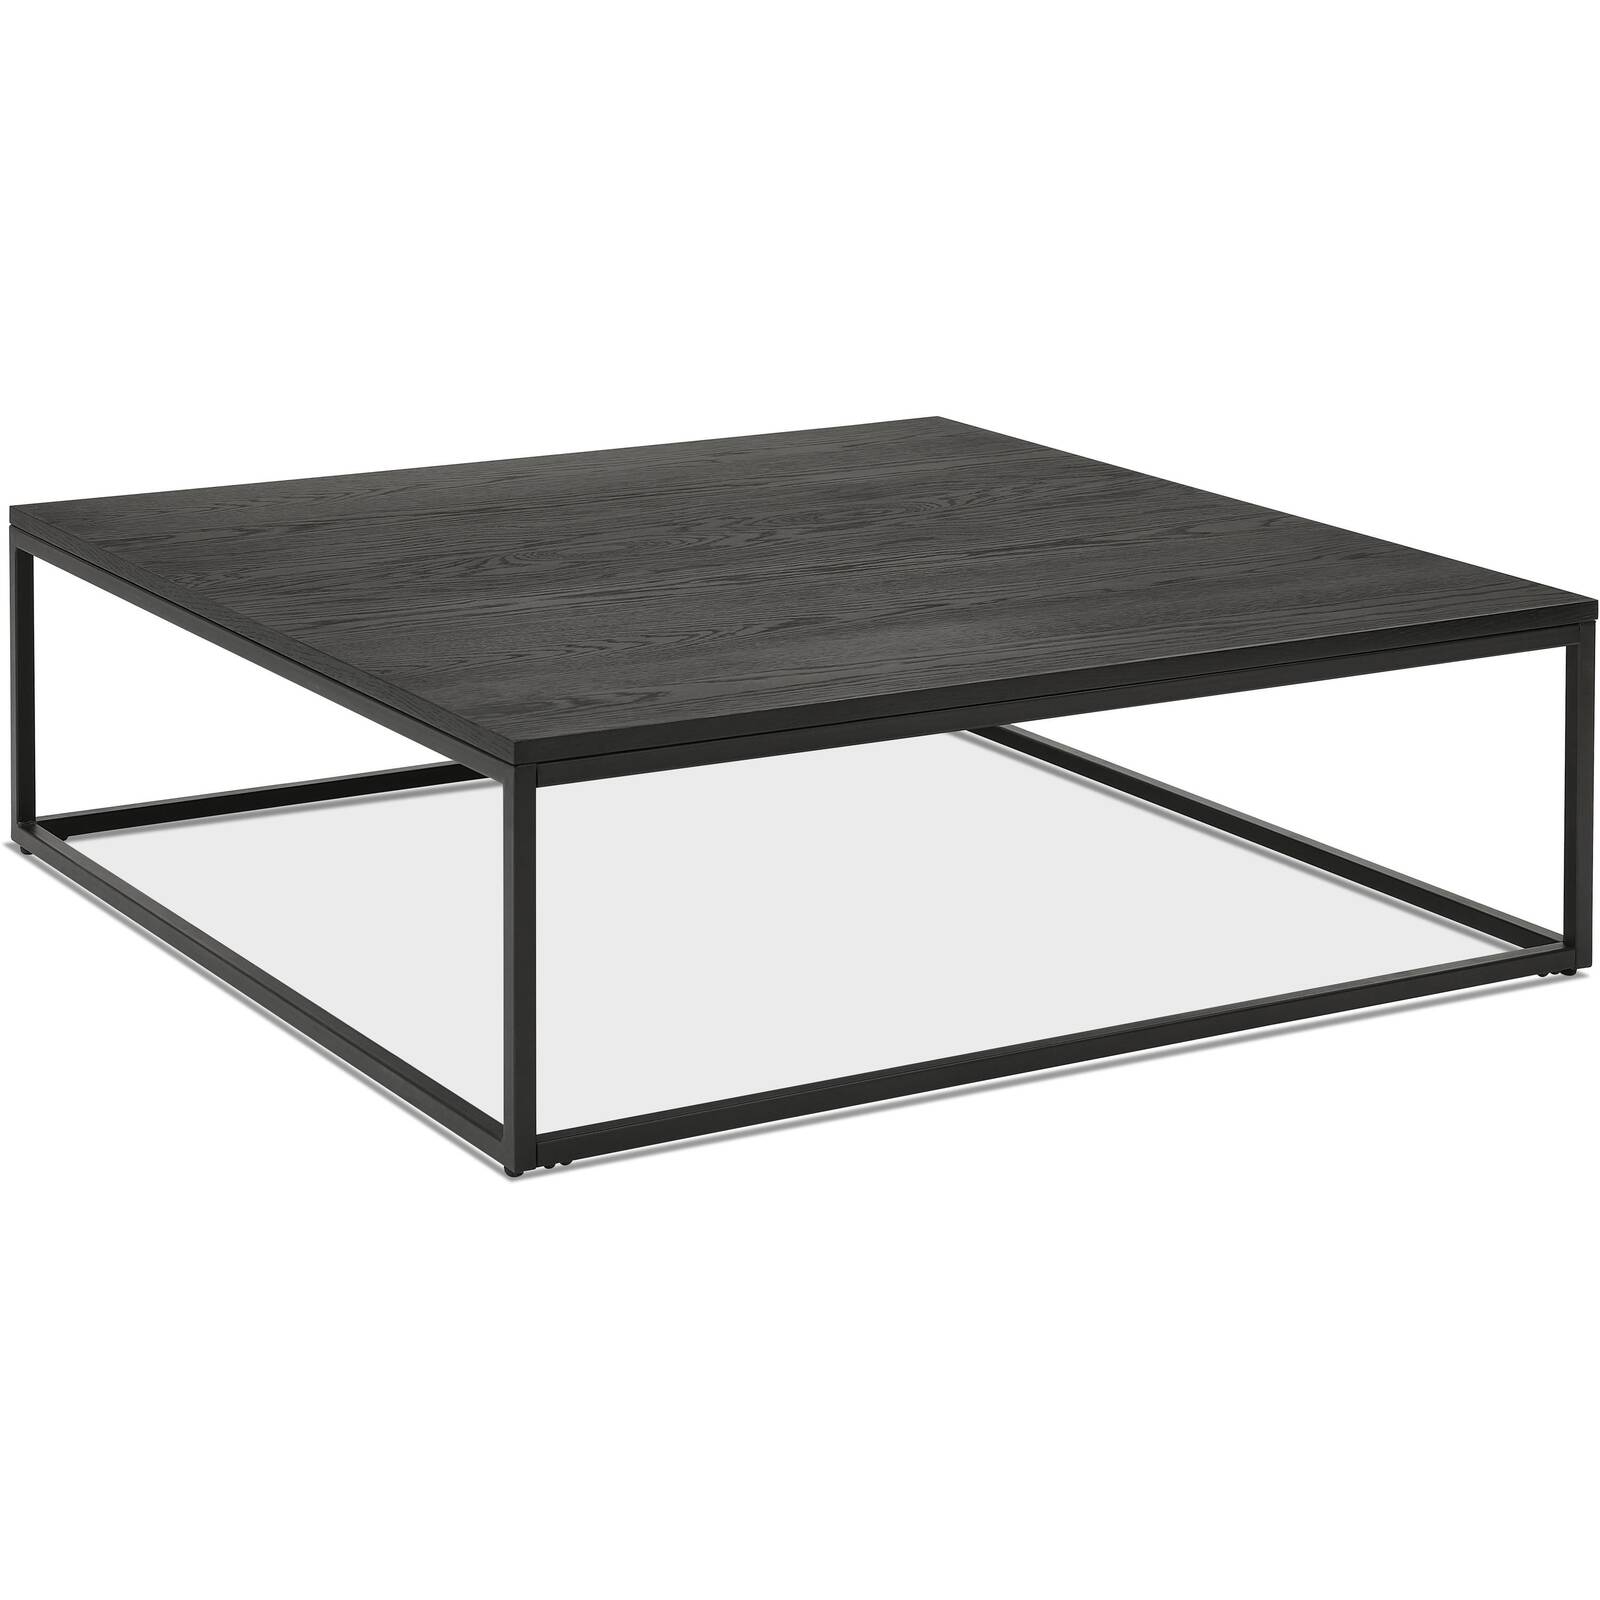 Table basse design carré métal et bois noir l110cm